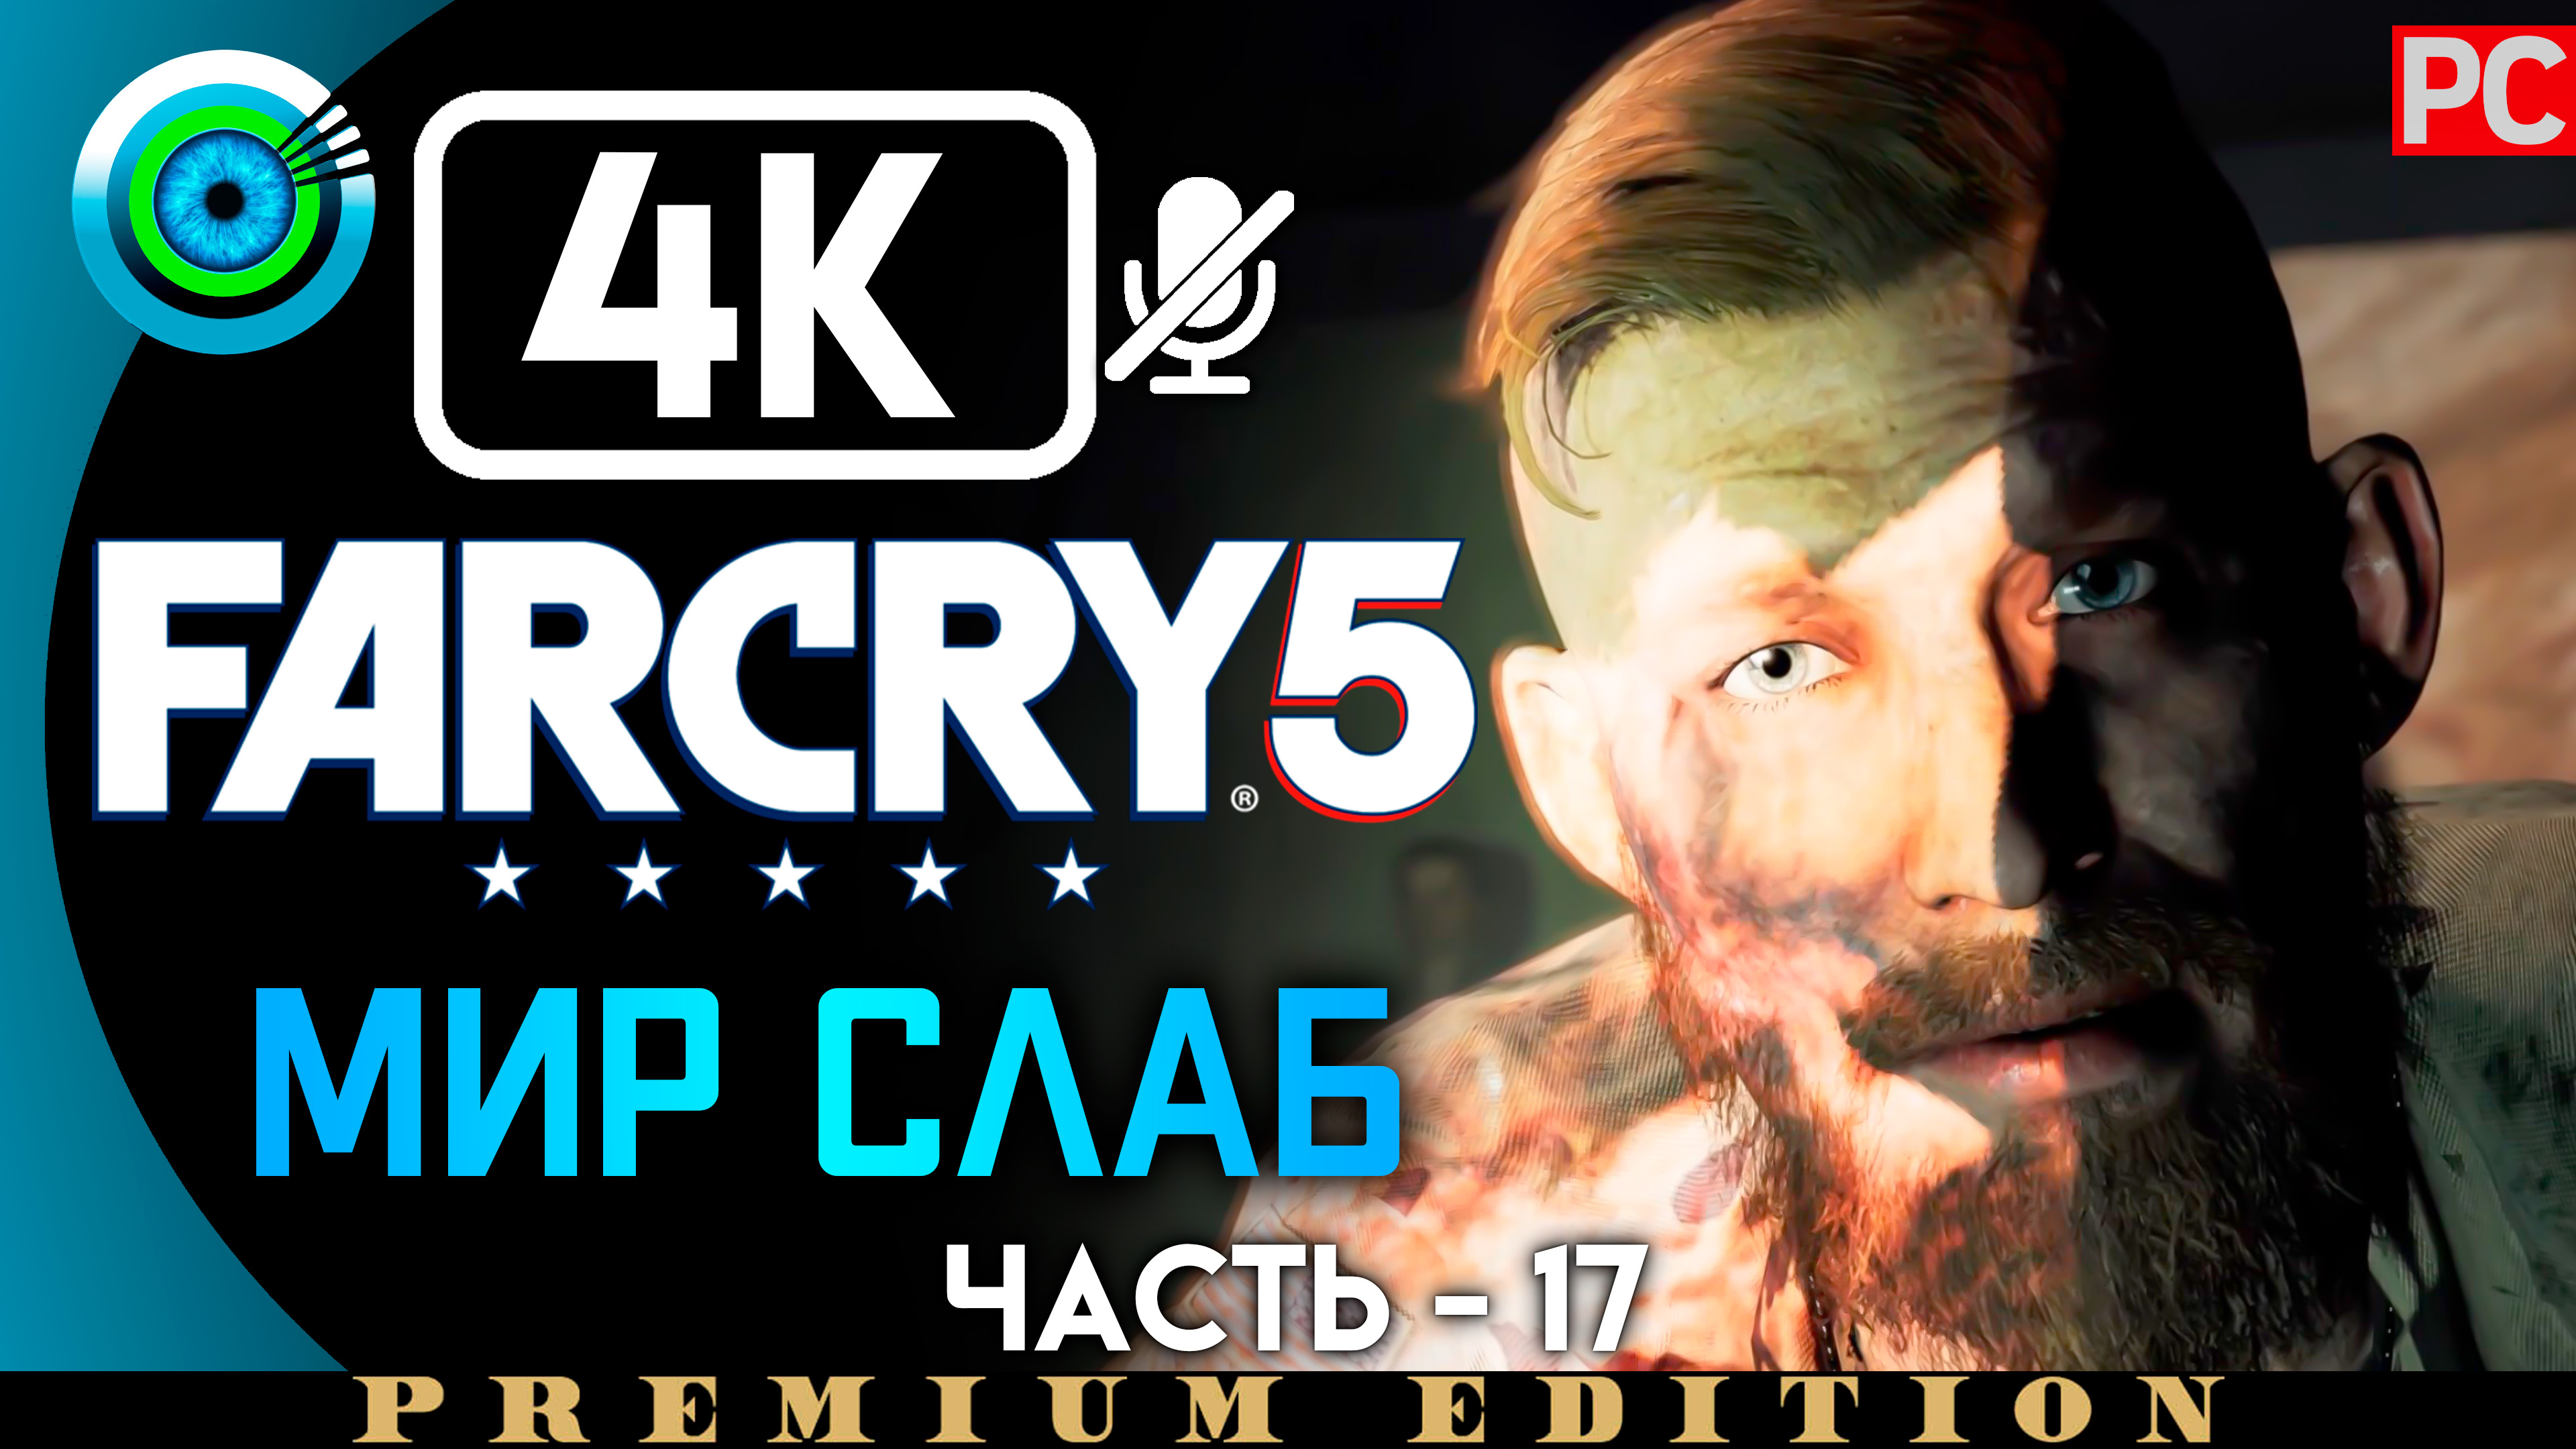 «Мир слаб» 100% Прохождение Far Cry 5 | Без комментариев — Часть 17